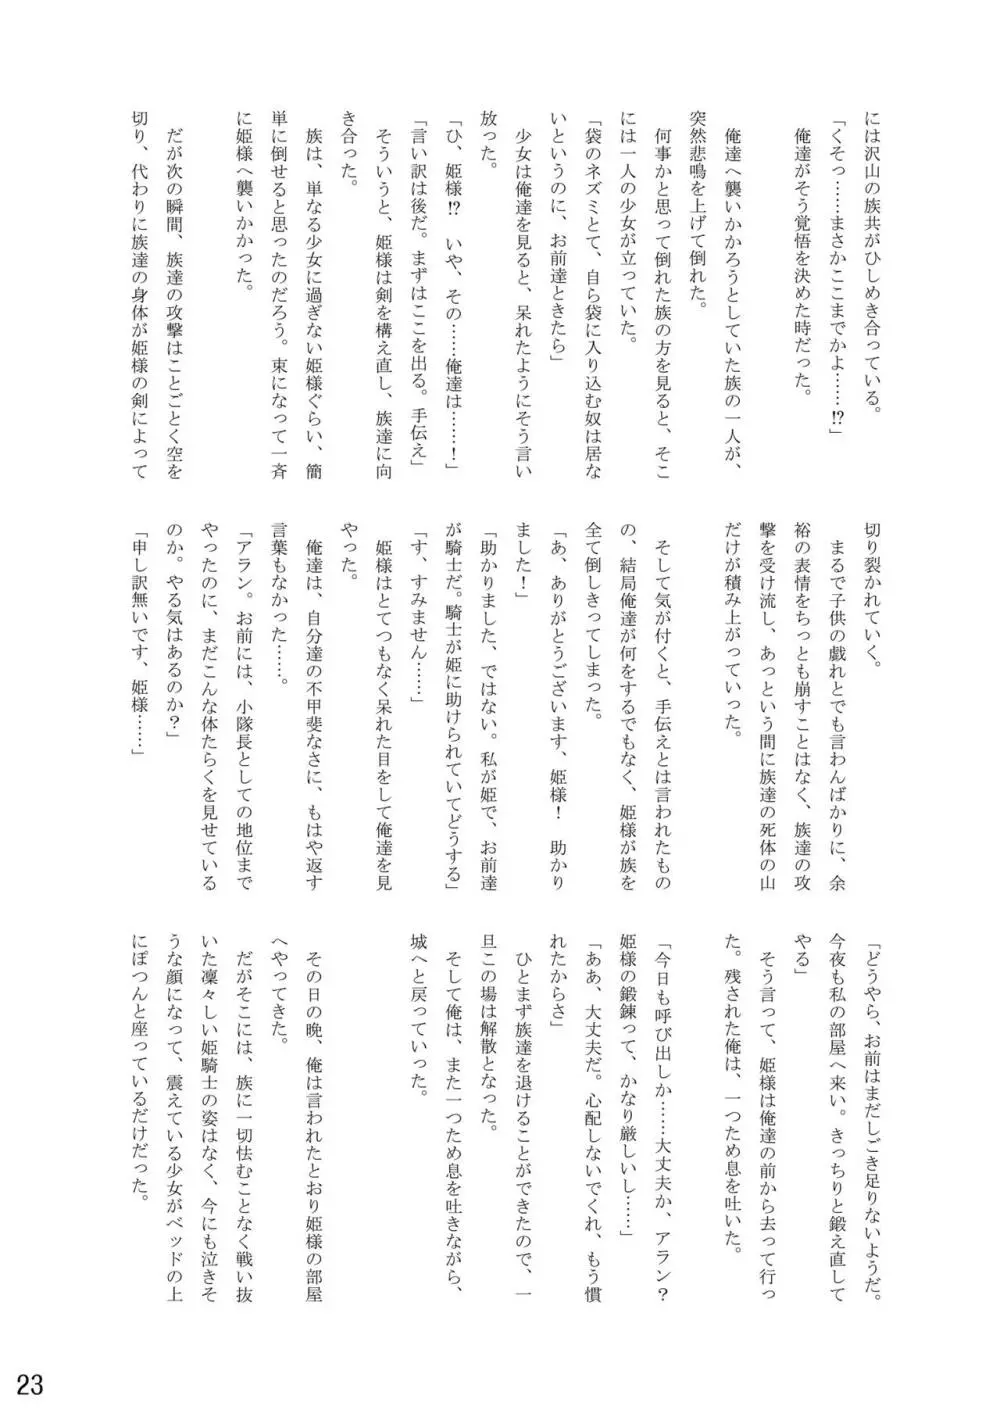 おむ☆フェス8開催記念合同誌「おむつっ娘PARTY!9」 23ページ